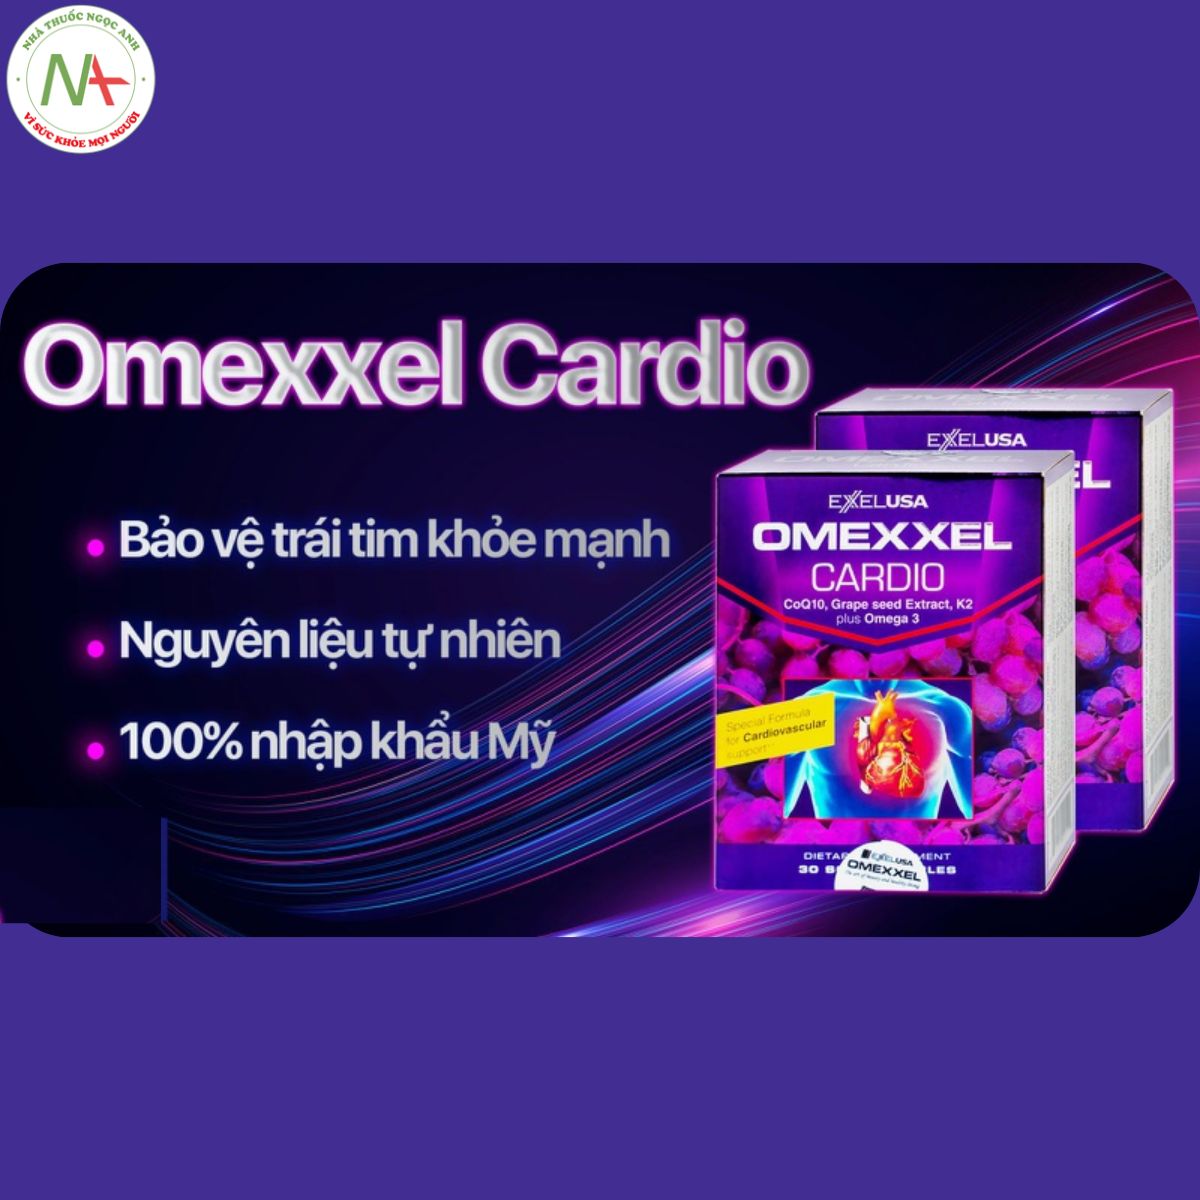 Omexxel Cardio EXELUSA